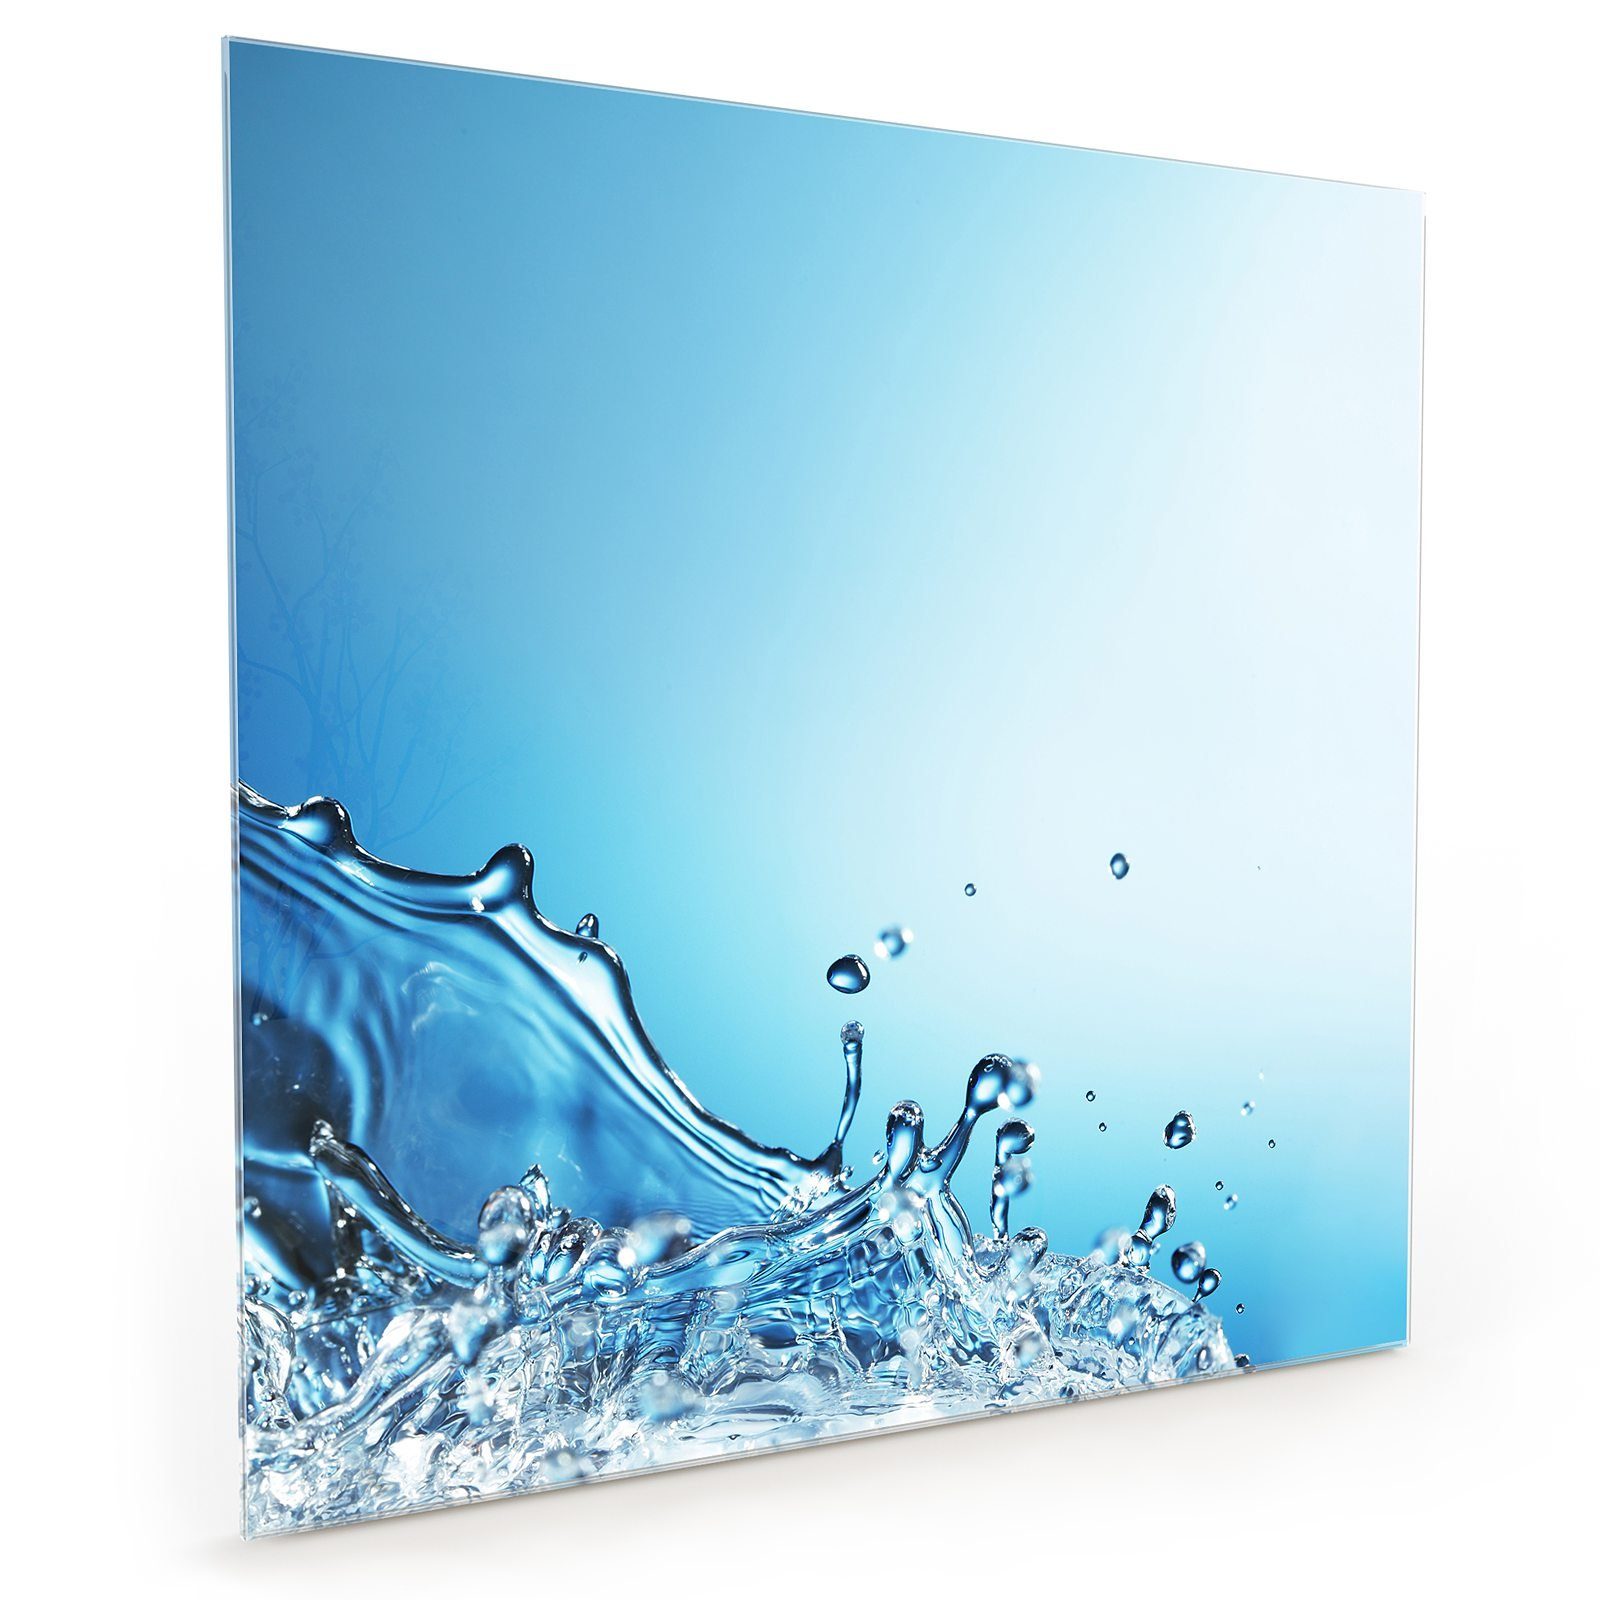 Glas Wassersplash mit Primedeco Rand am Spritzschutz Küchenrückwand Motiv Küchenrückwand